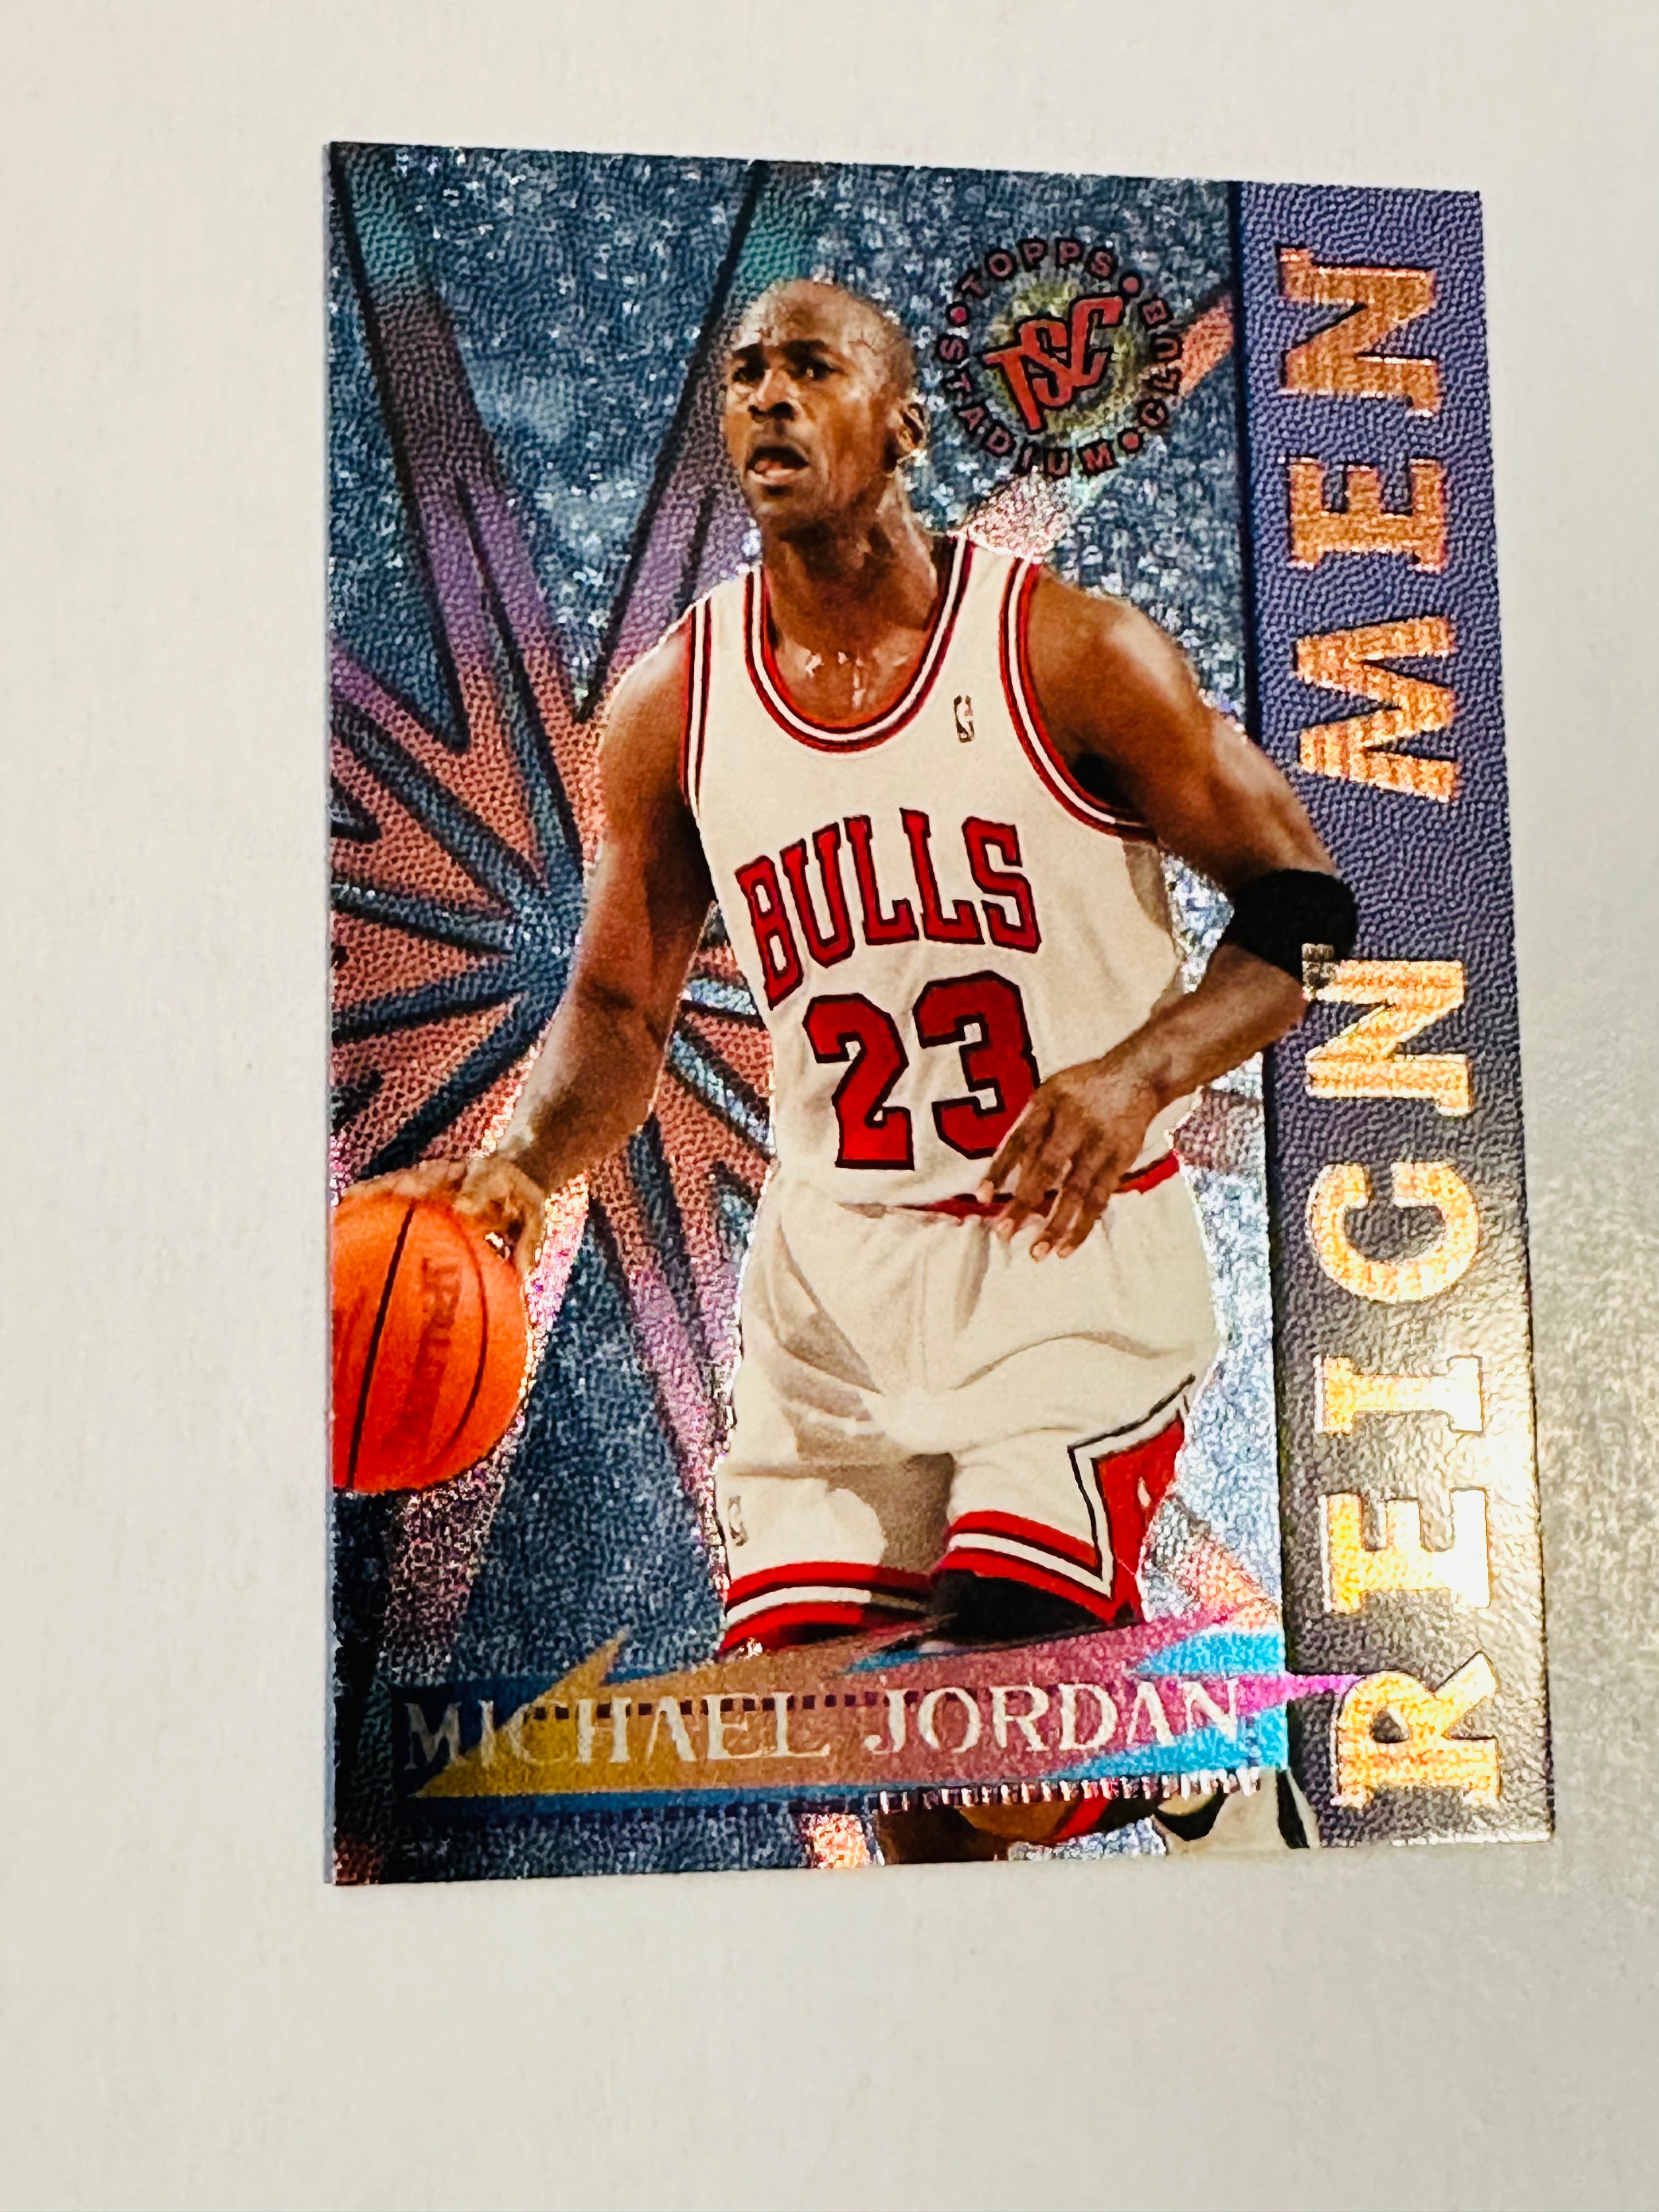 Michael Jordan NBA legend topps basketball foil insert card, 1996